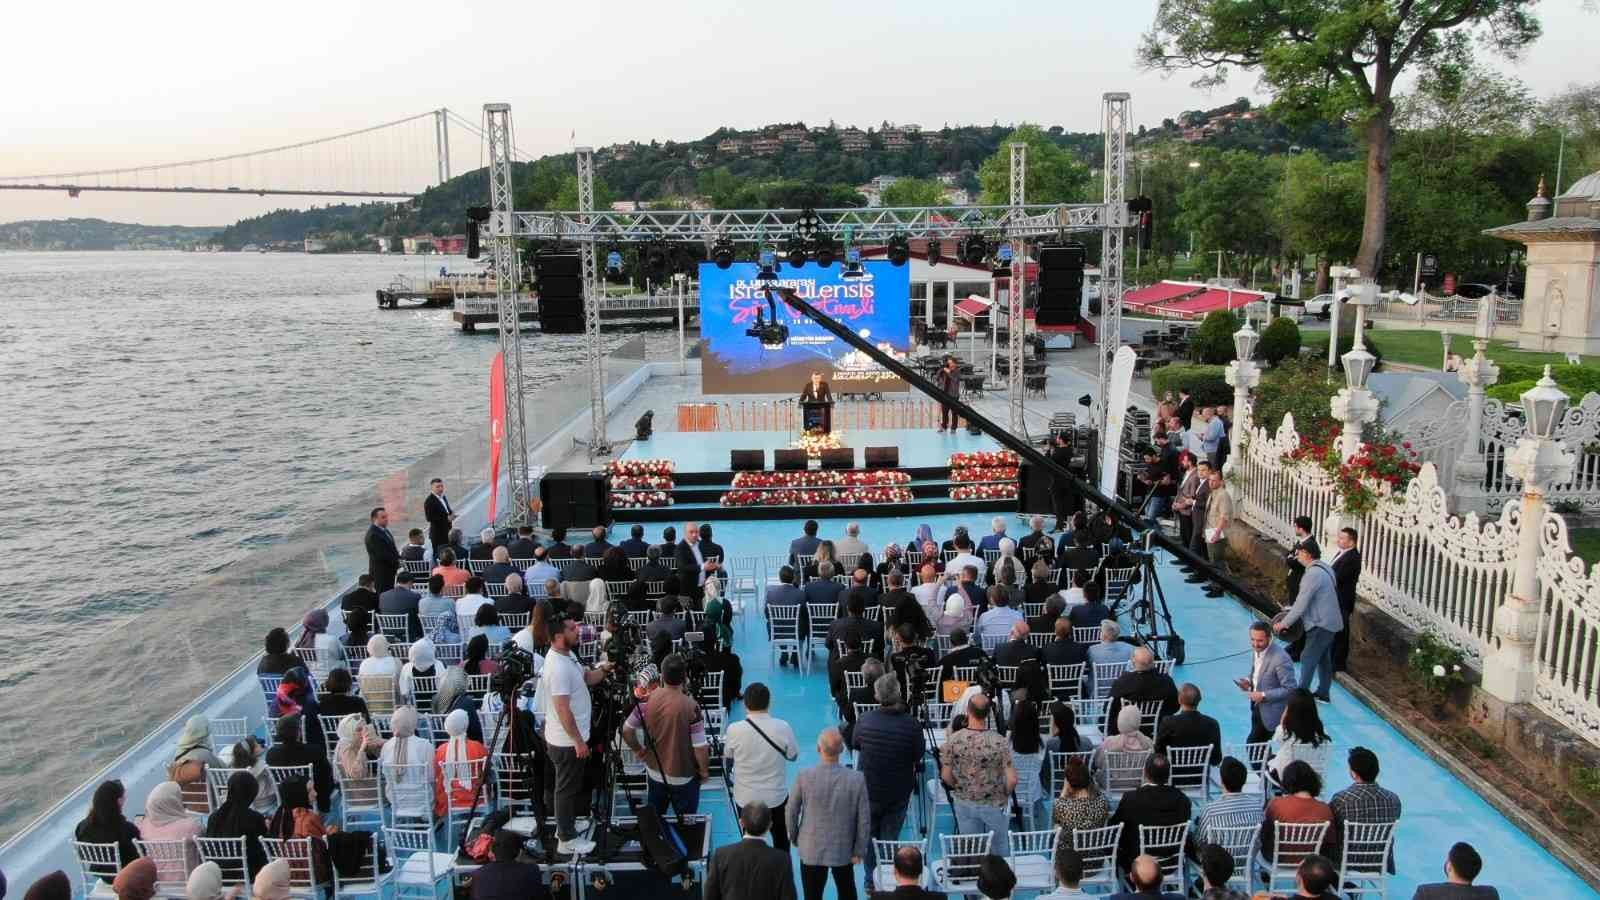 Sultanbeyli Belediyesi tarafından düzenlenen, kültür-sanat dünyasının yakından takip ettiği 9. Uluslararası İstanbulensis Şiir Festivali başladı ...